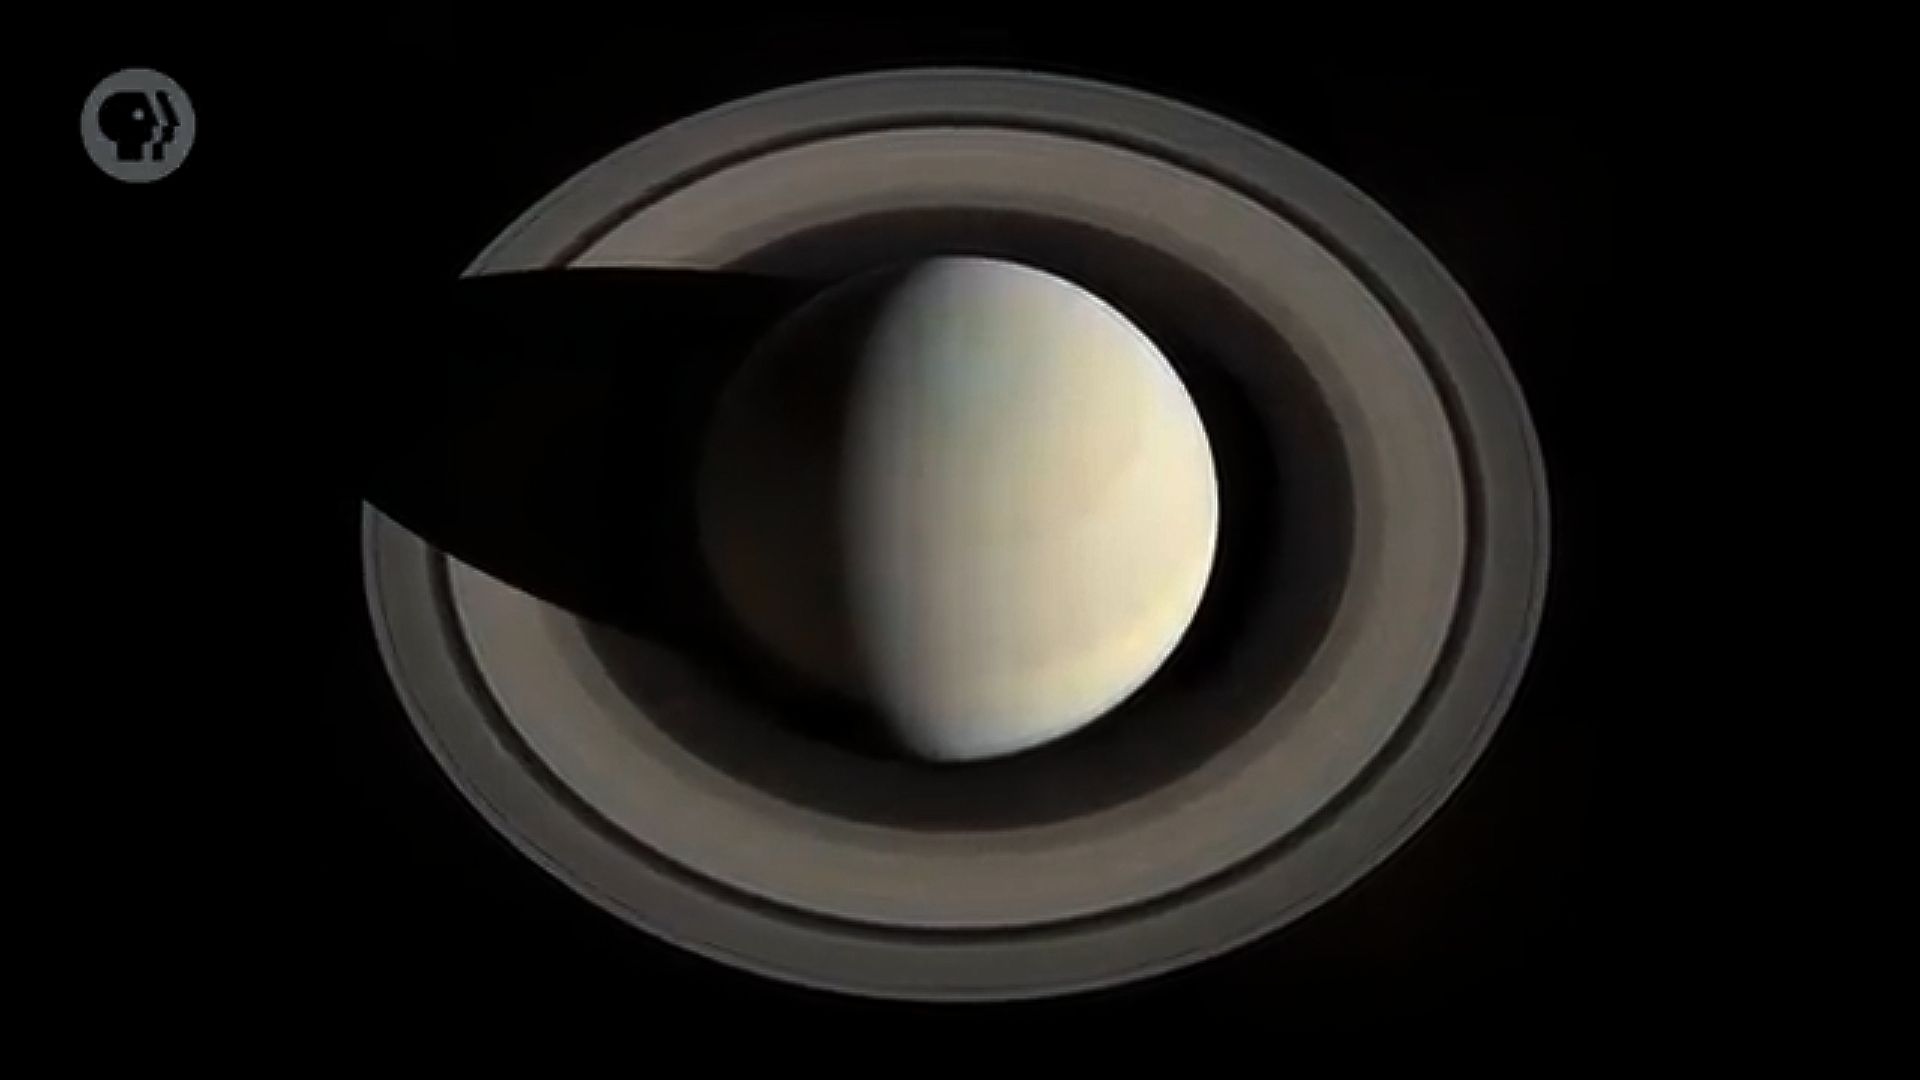 18土星及其卫星:生命探索的新希望